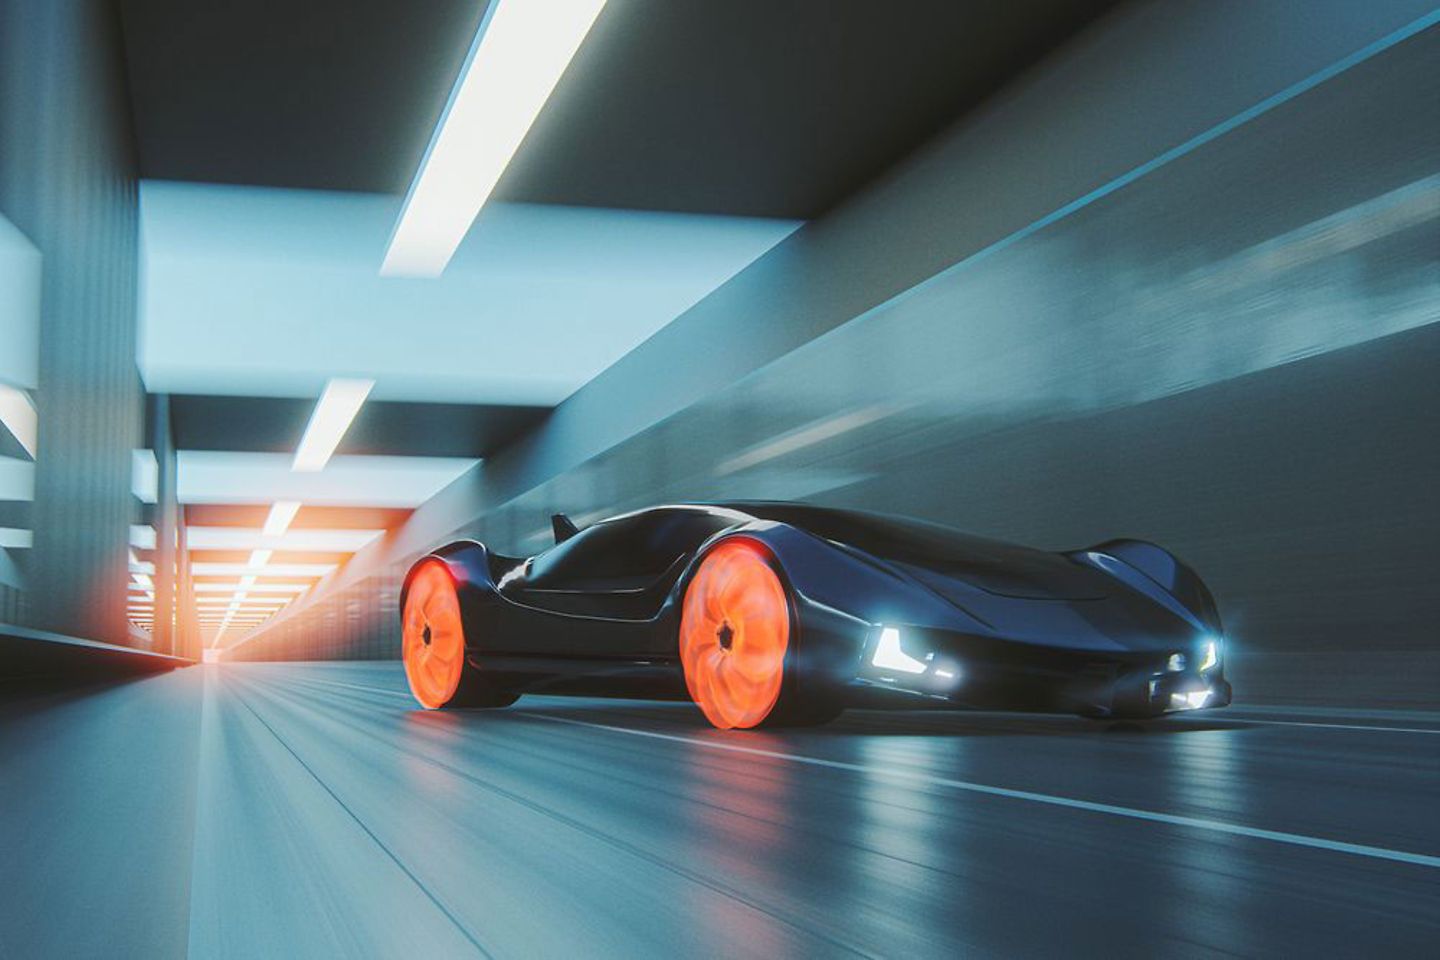 Futuristic car drives through a well-lit tunnel